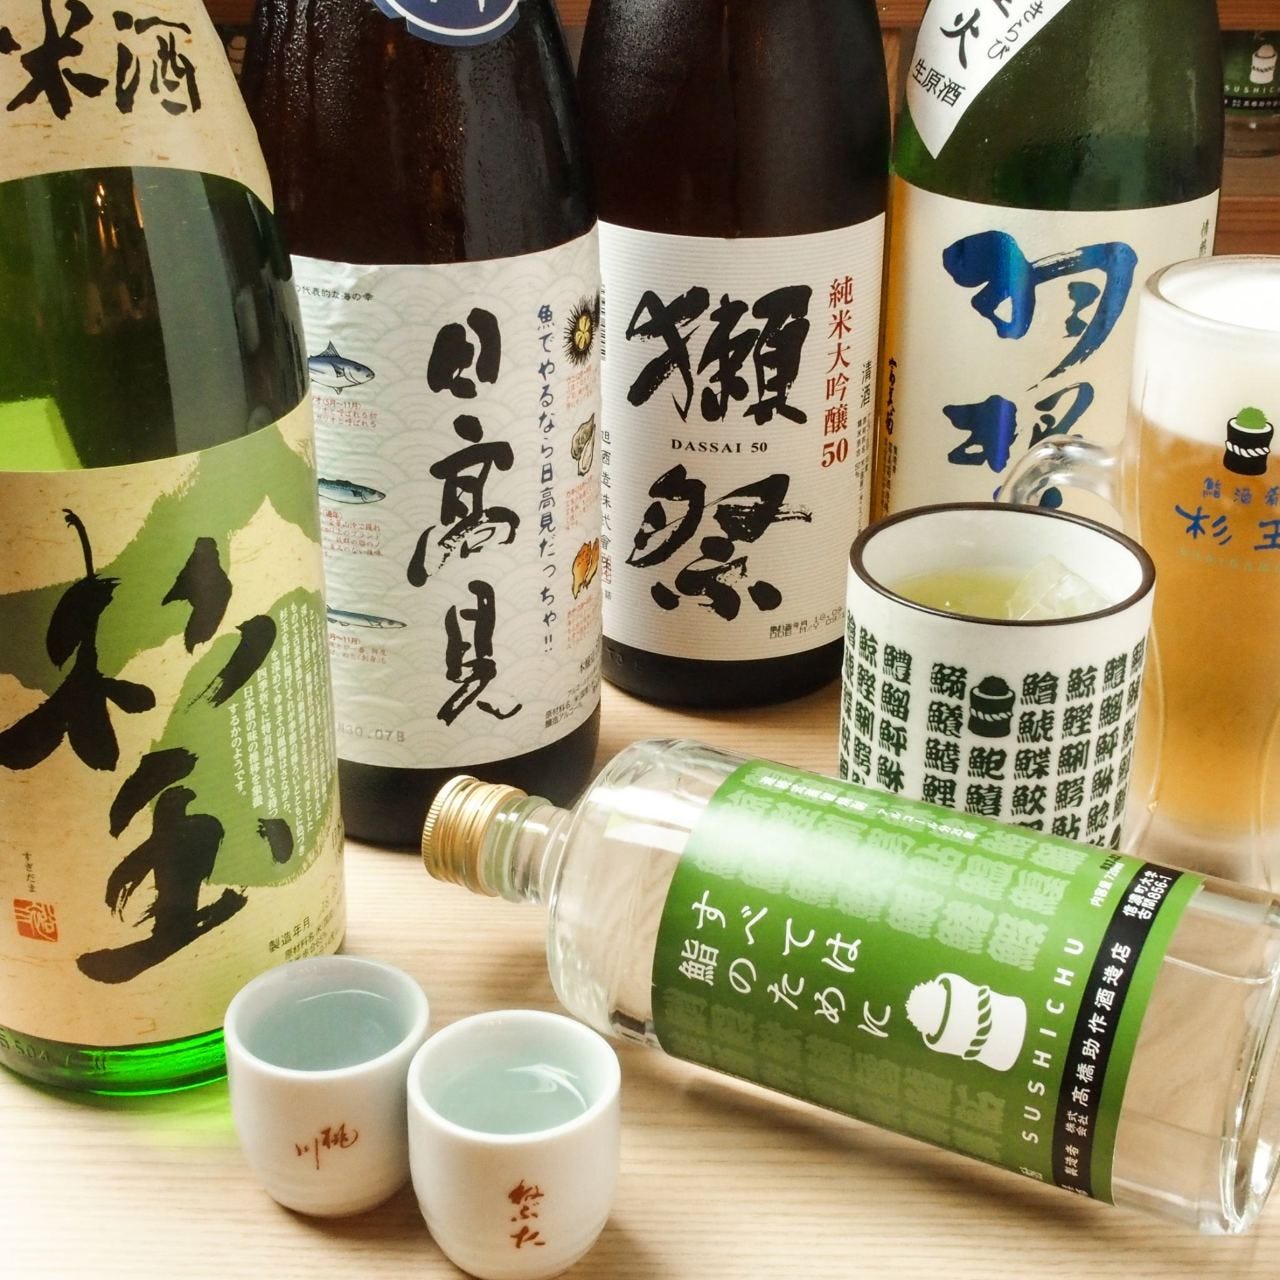 鮨・酒・肴 杉玉 大和田